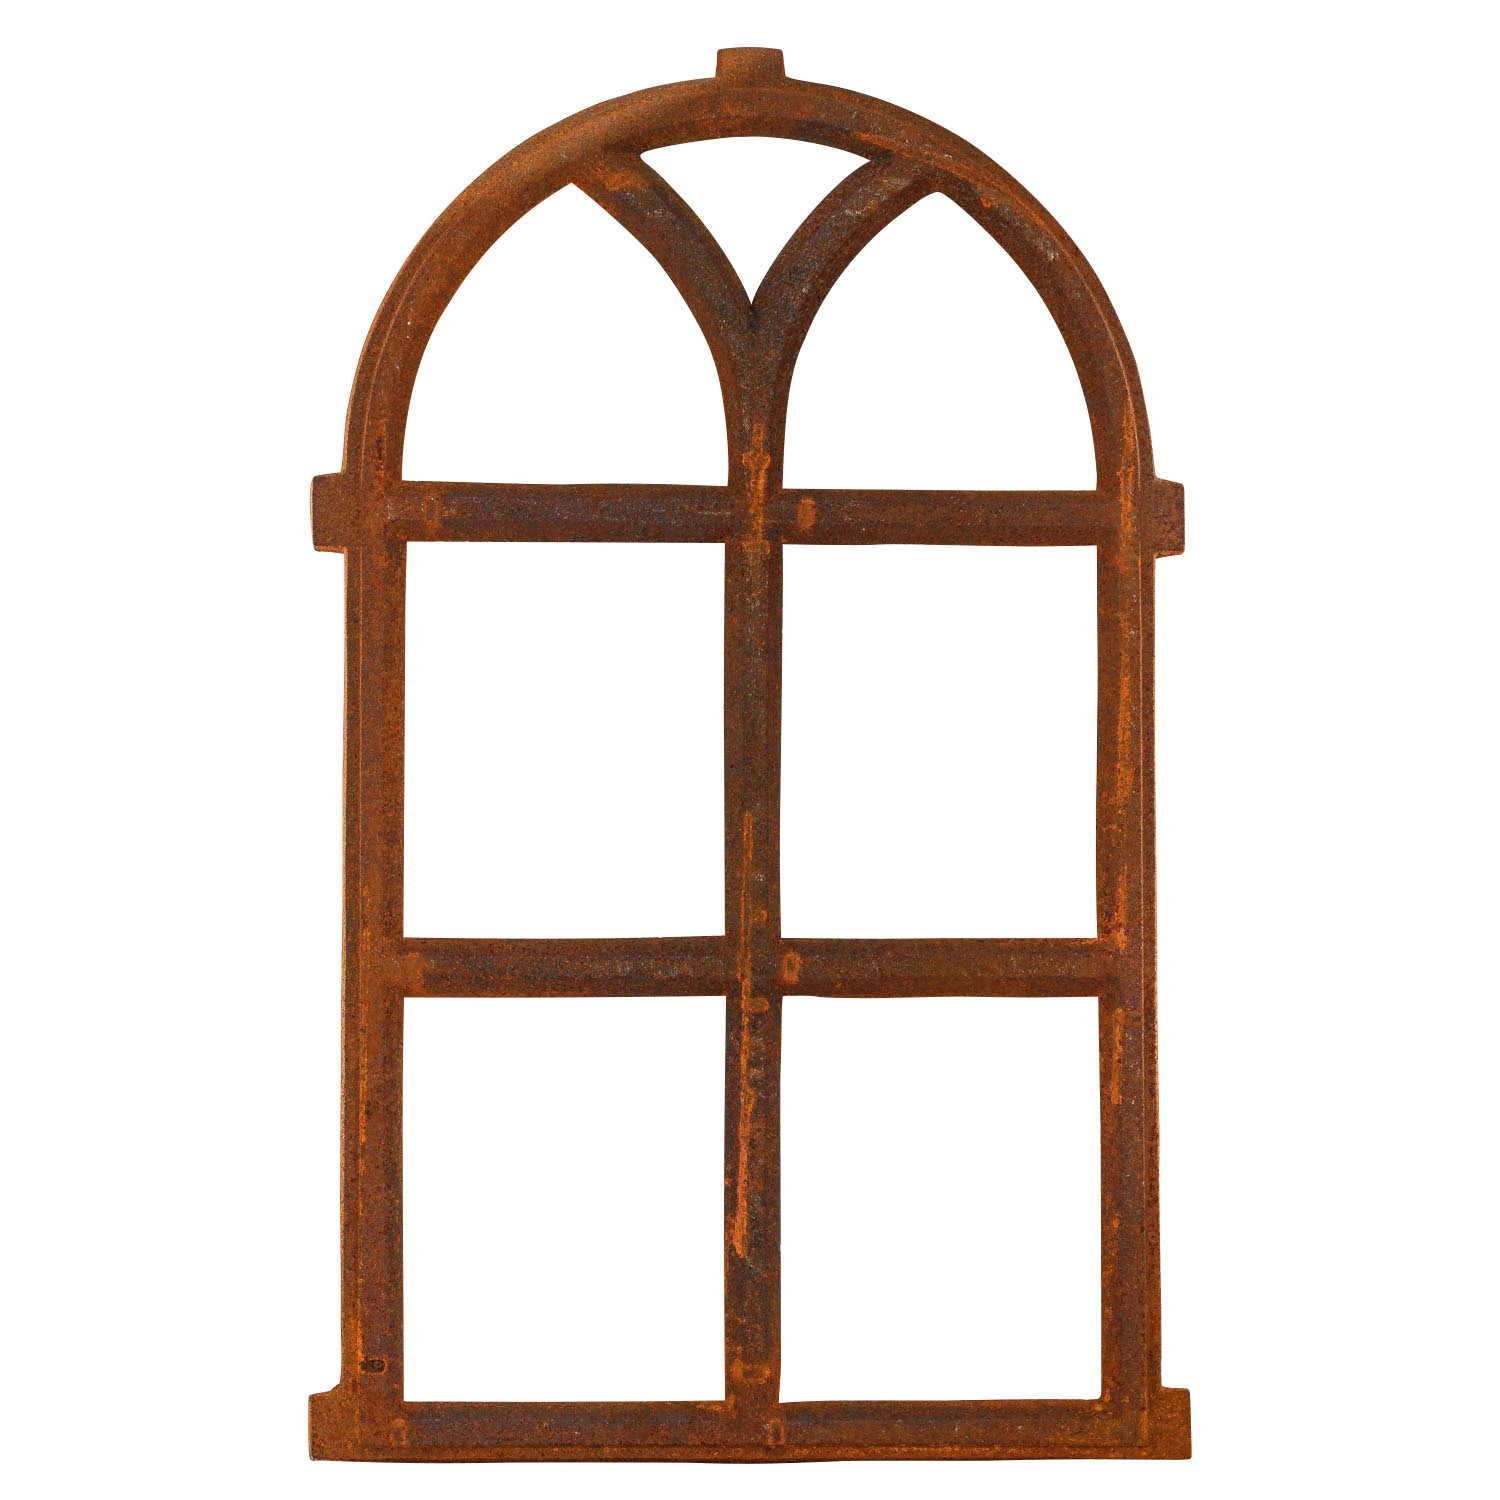 Stallfenster Fenster aus Eisen NEU antik Stichbogen Eisenfenster ländlich 